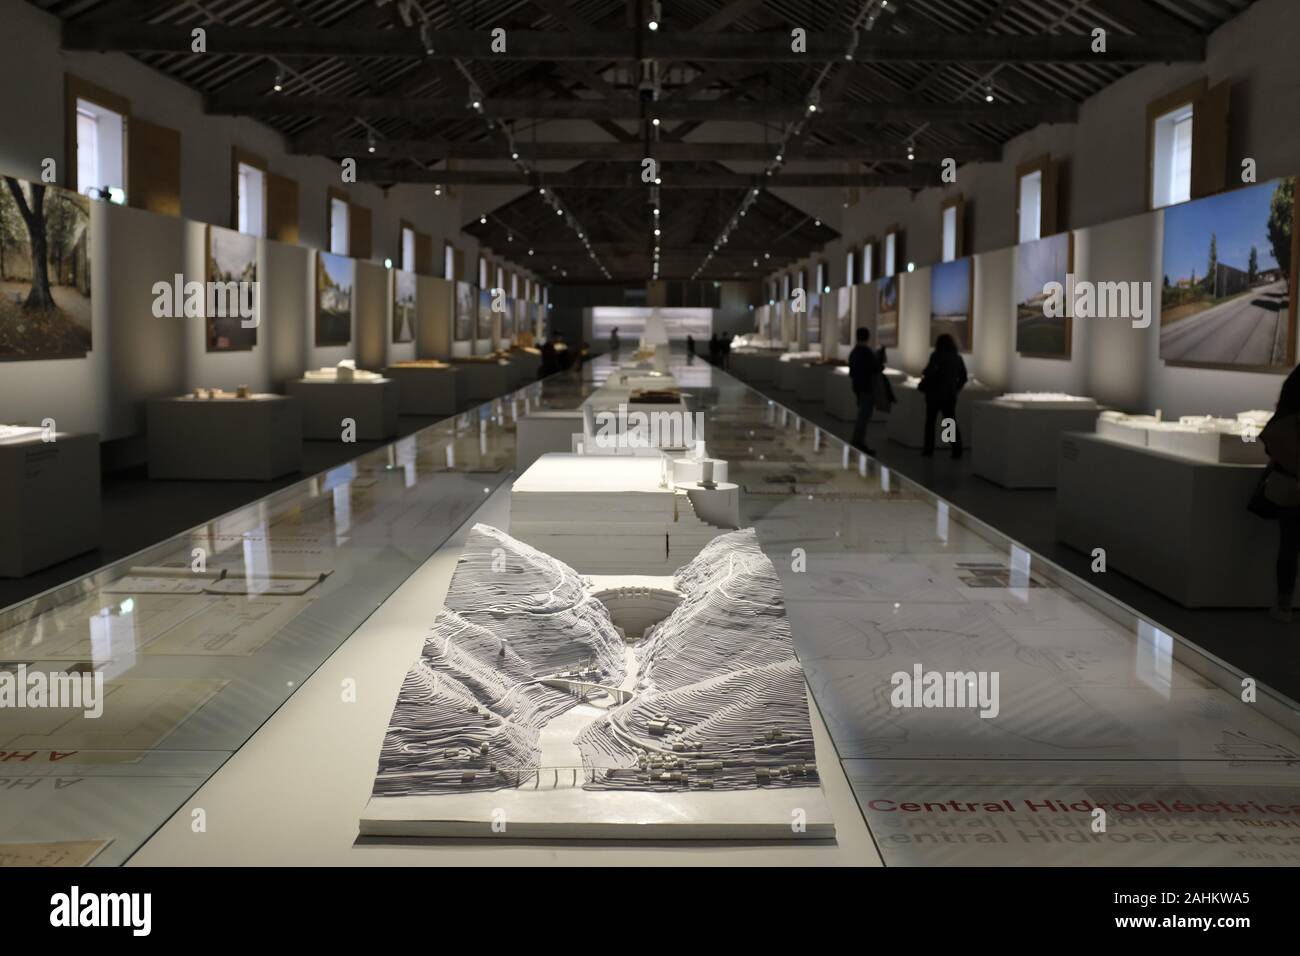 Exposition des oeuvres de l'architecte Souto Moura dans la Maison de l'Architecture à Matosinhos, Portugal. Banque D'Images